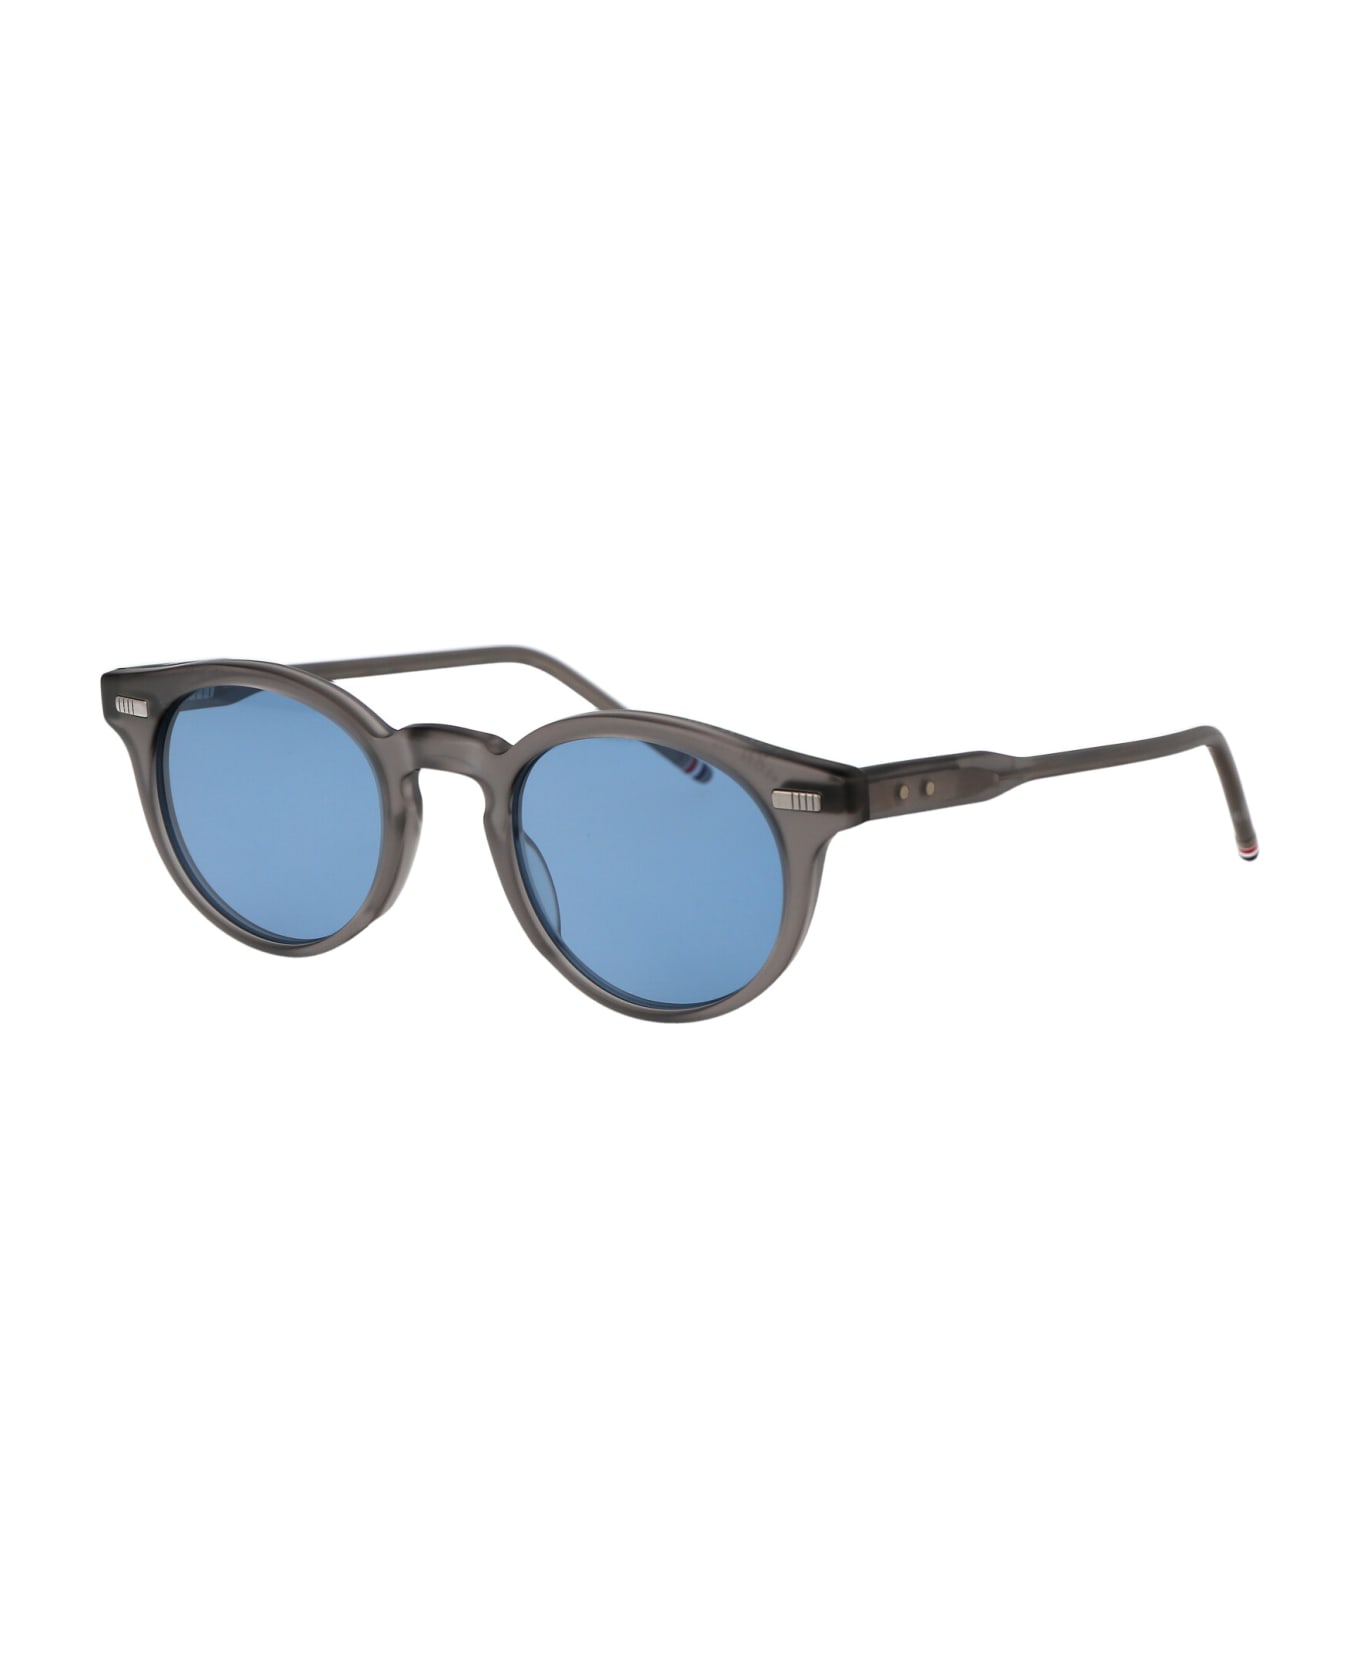 Thom Browne Ues404a-g0002-060-45 Sunglasses - light grey サングラス